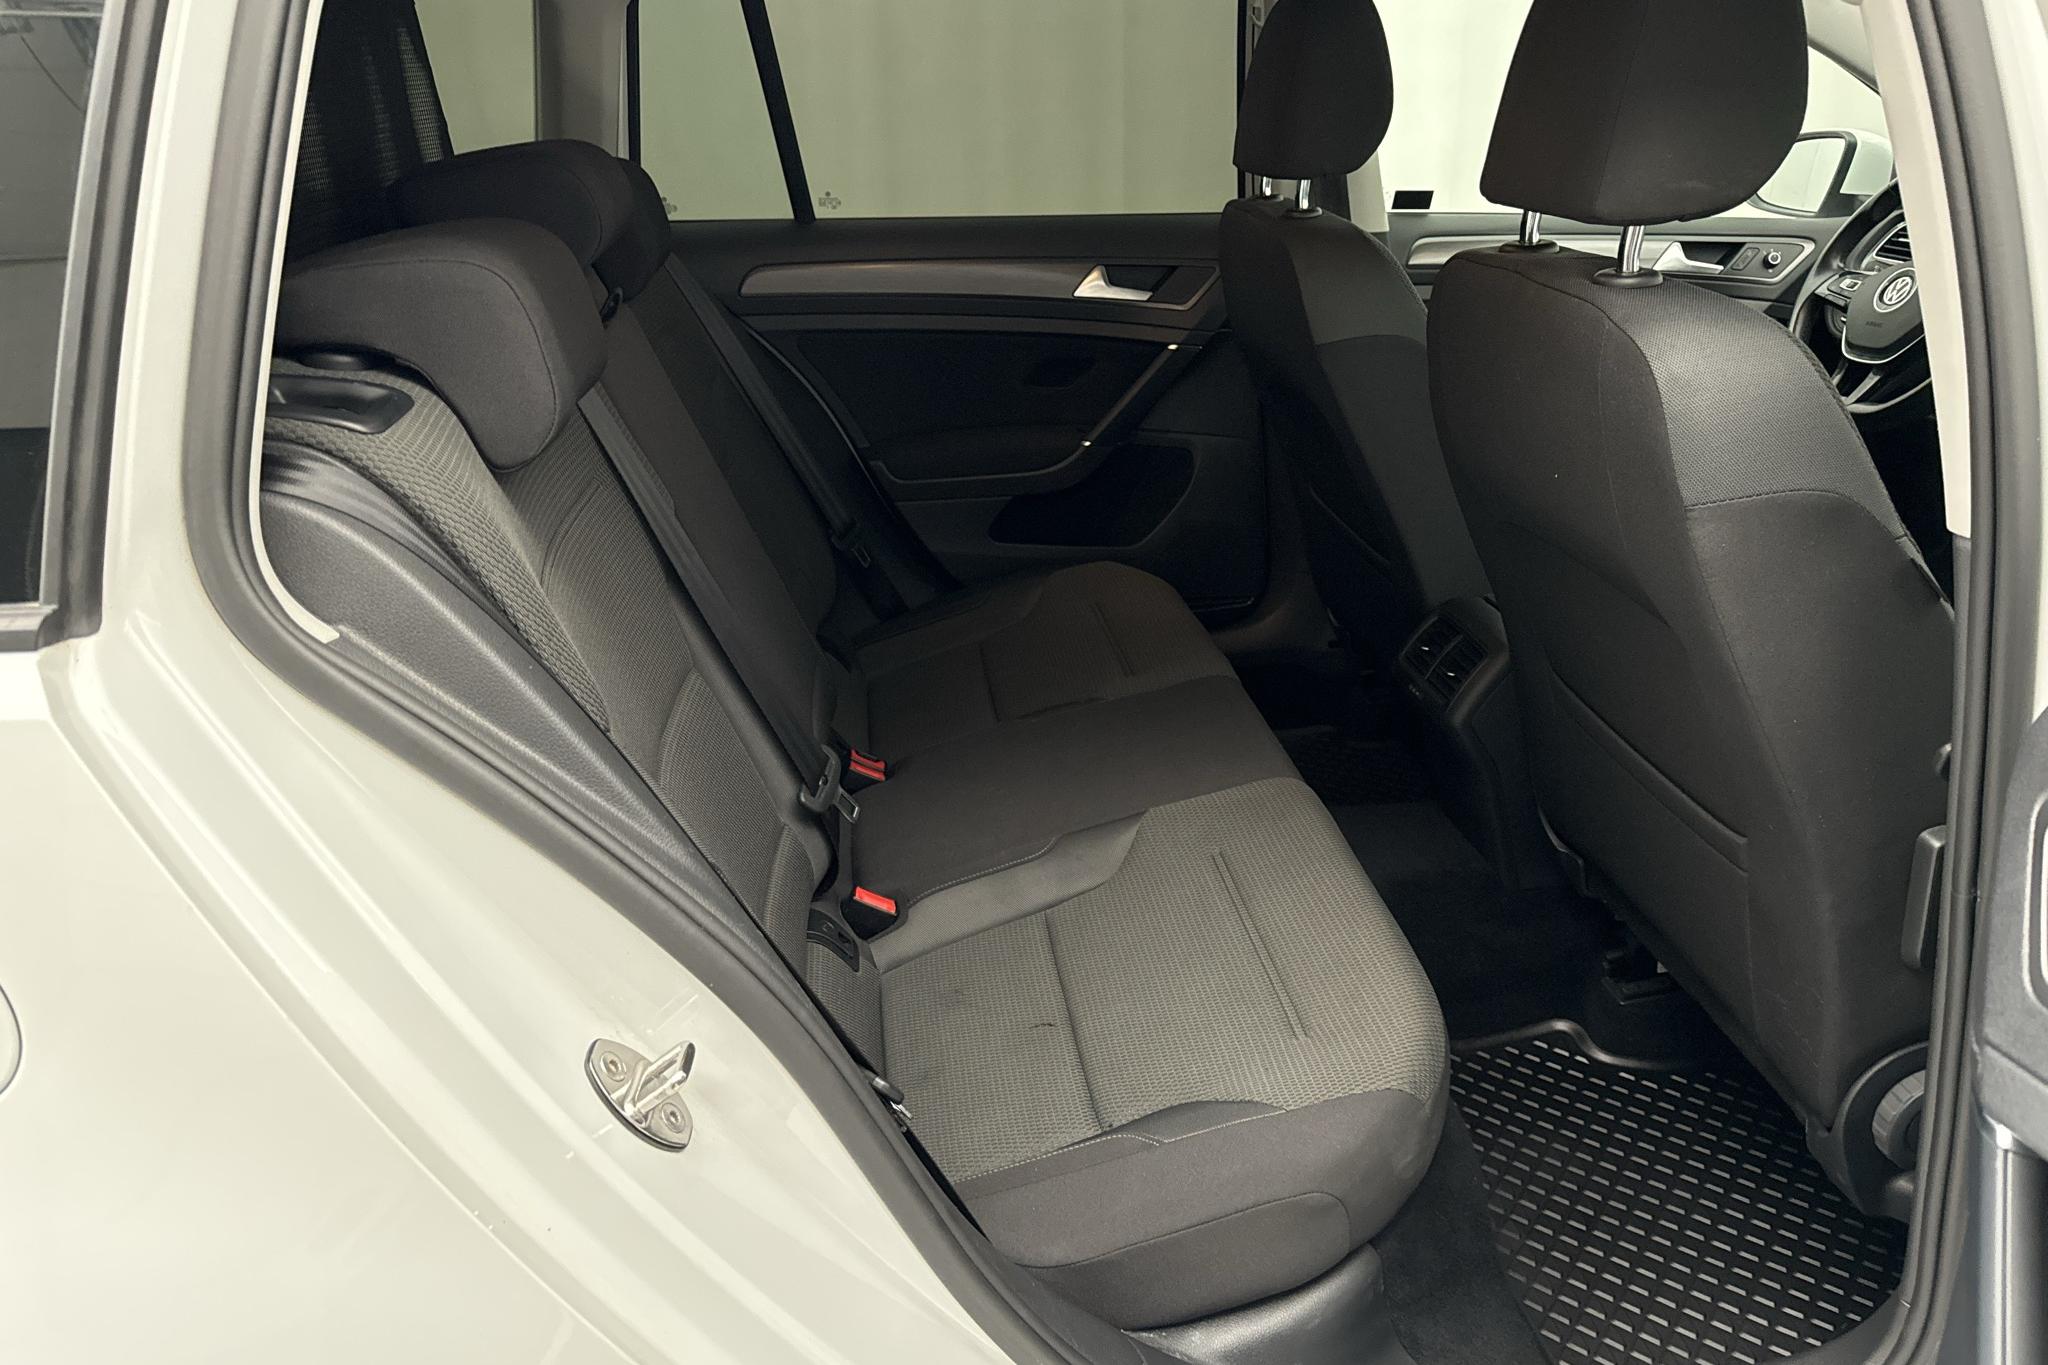 VW Golf VII 1.6 TDI Sportscombi (115hk) - 13 222 mil - Automat - vit - 2019